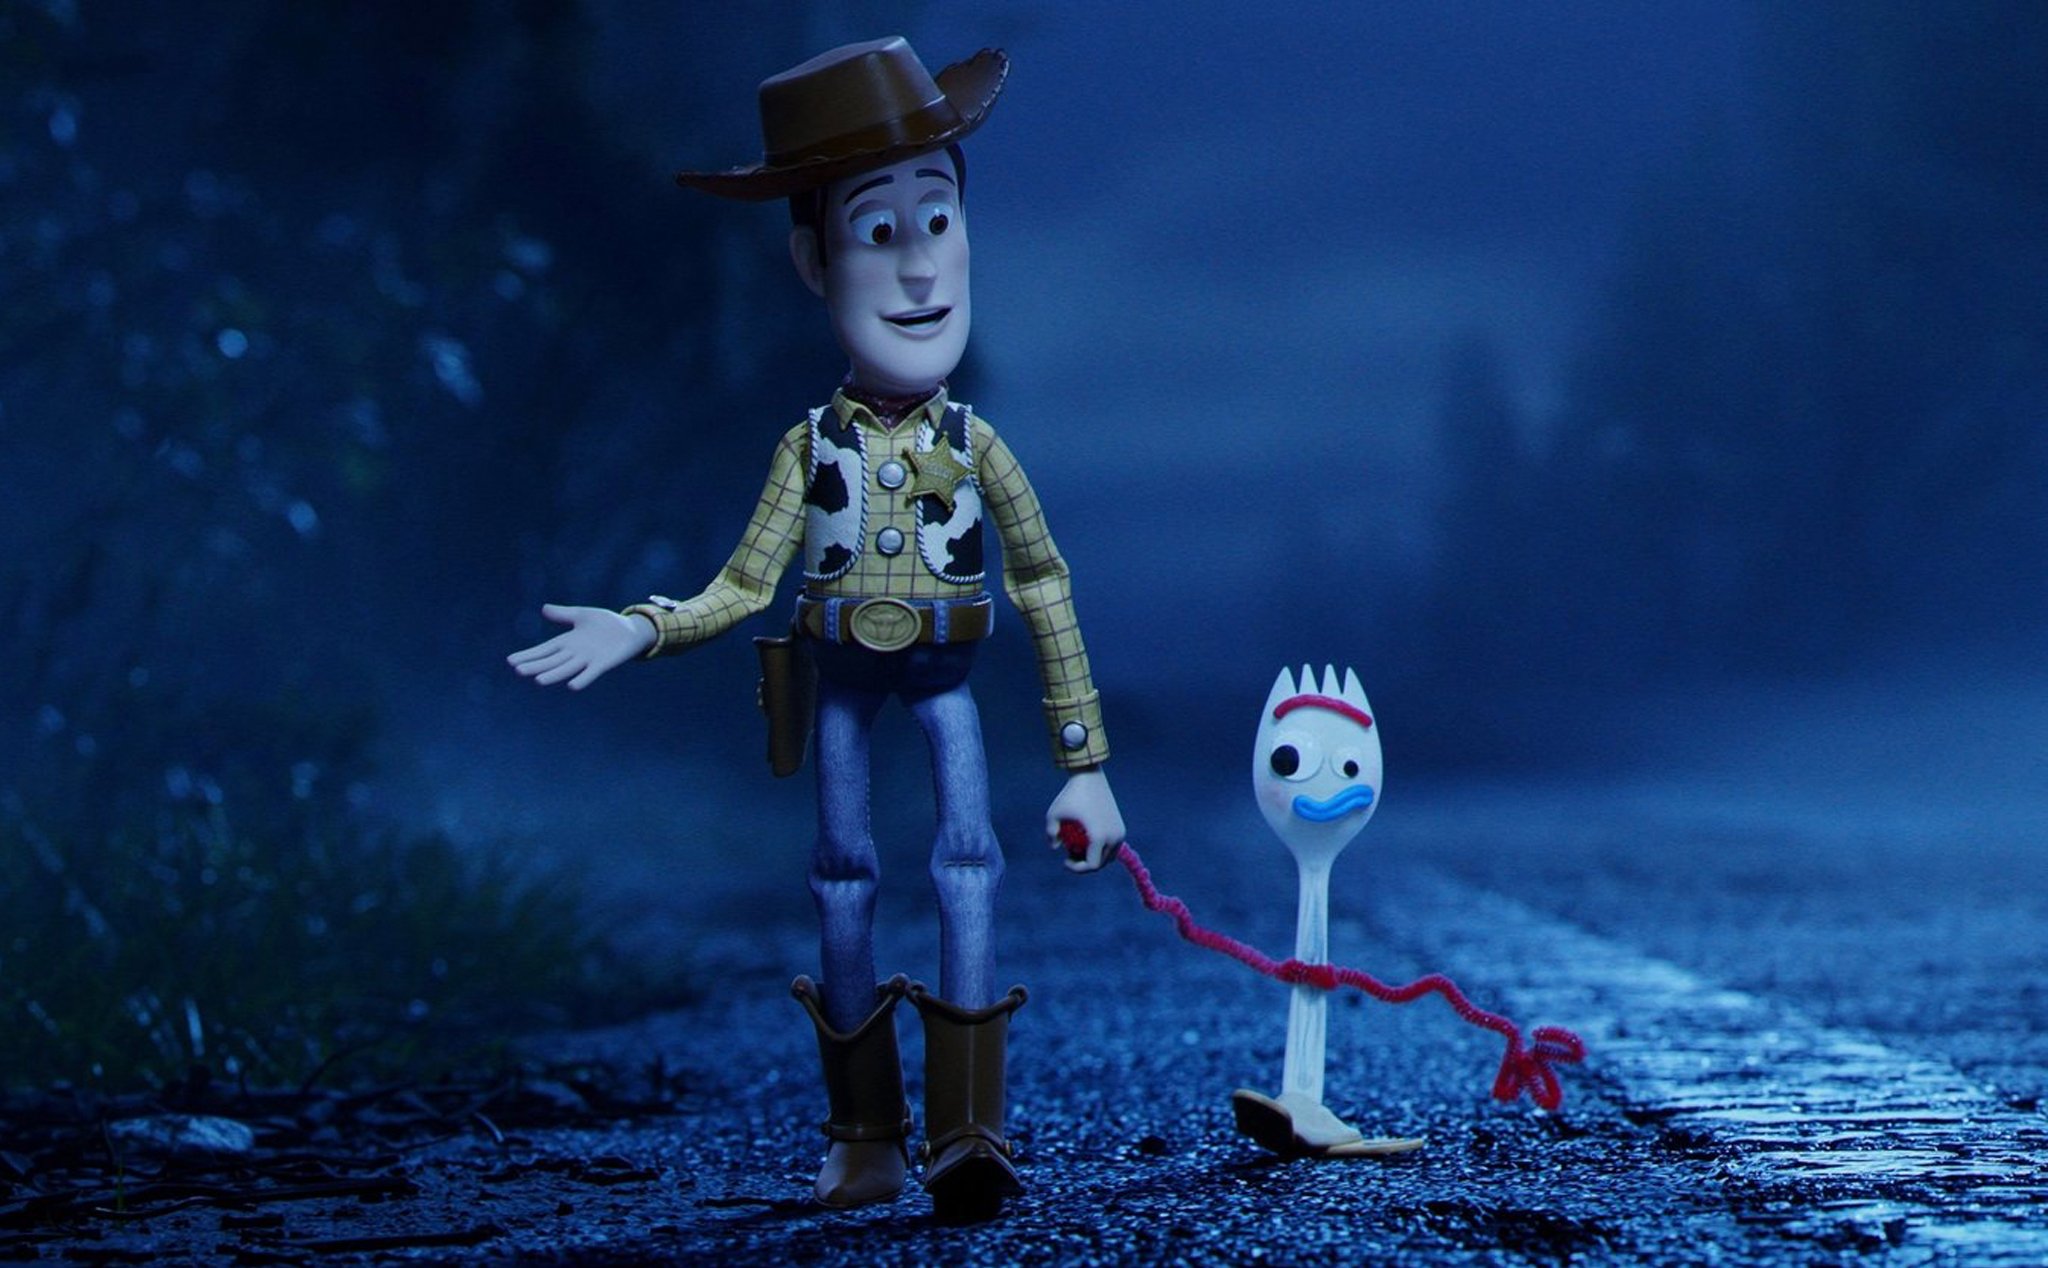 Đánh giá phim Toy Story 4: Chưa bao giờ đủ lớn để ngừng xem hoạt hình